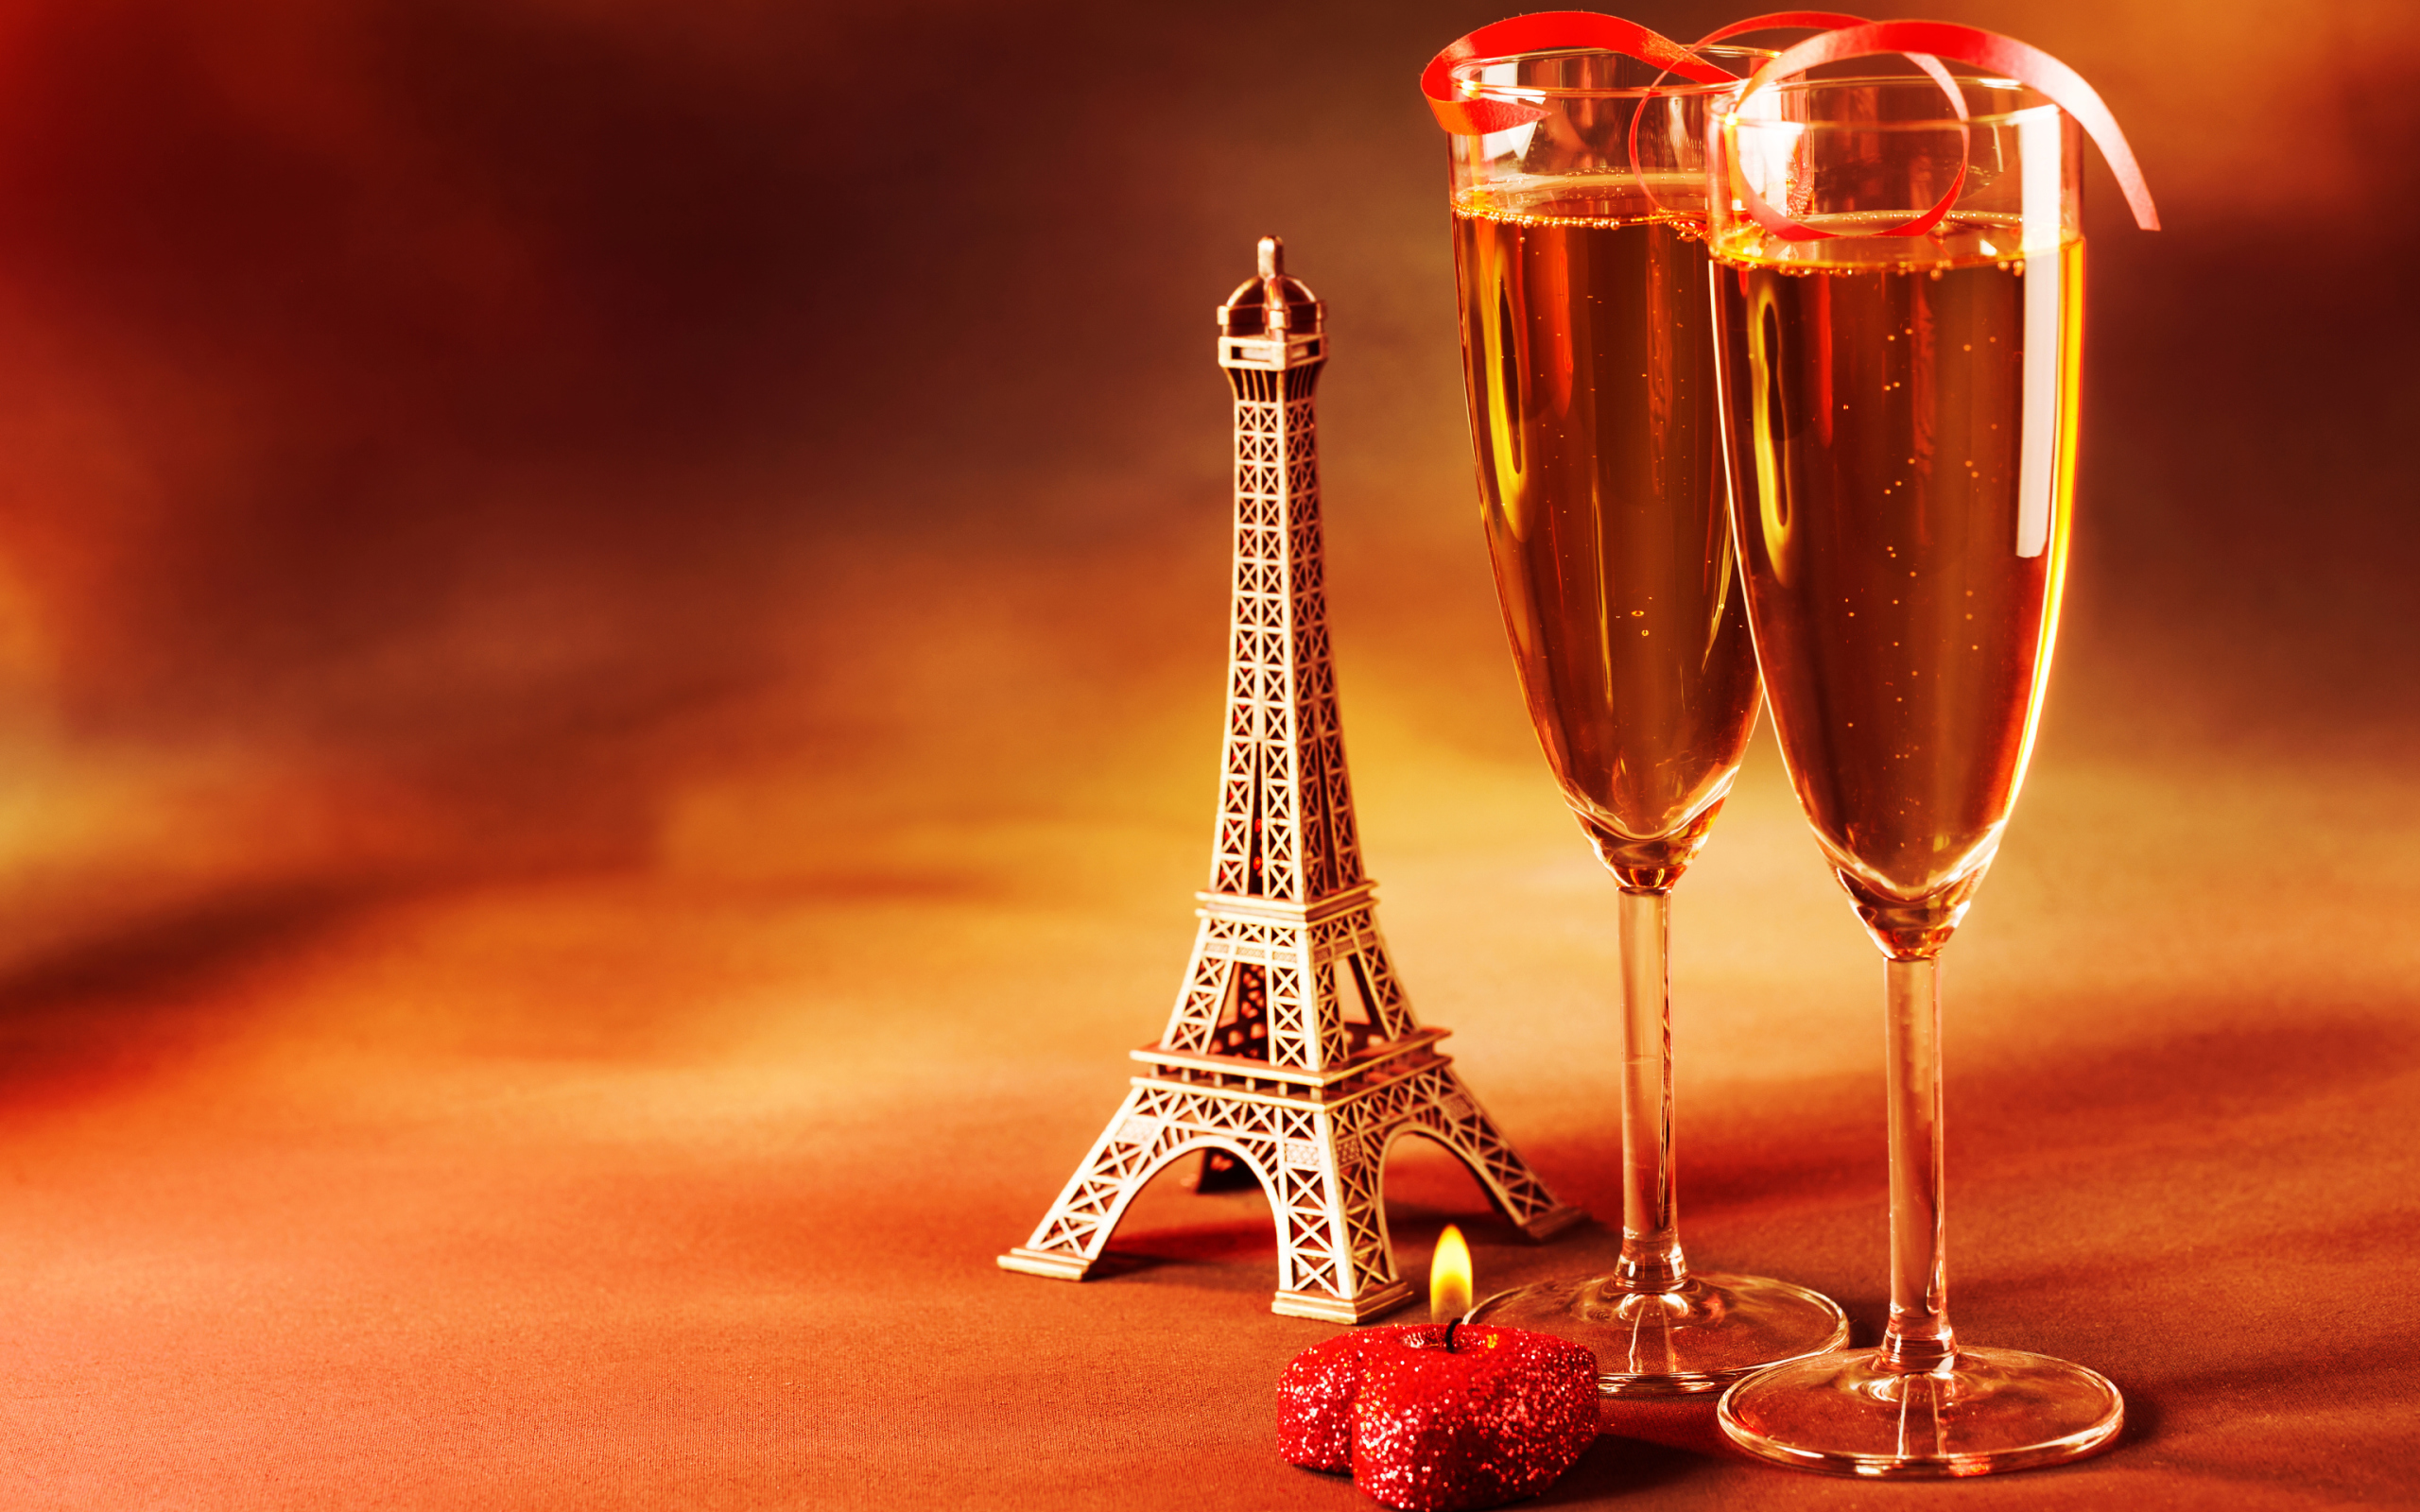 Обои Paris Mini Eiffel Tower And Champagne 2560x1600